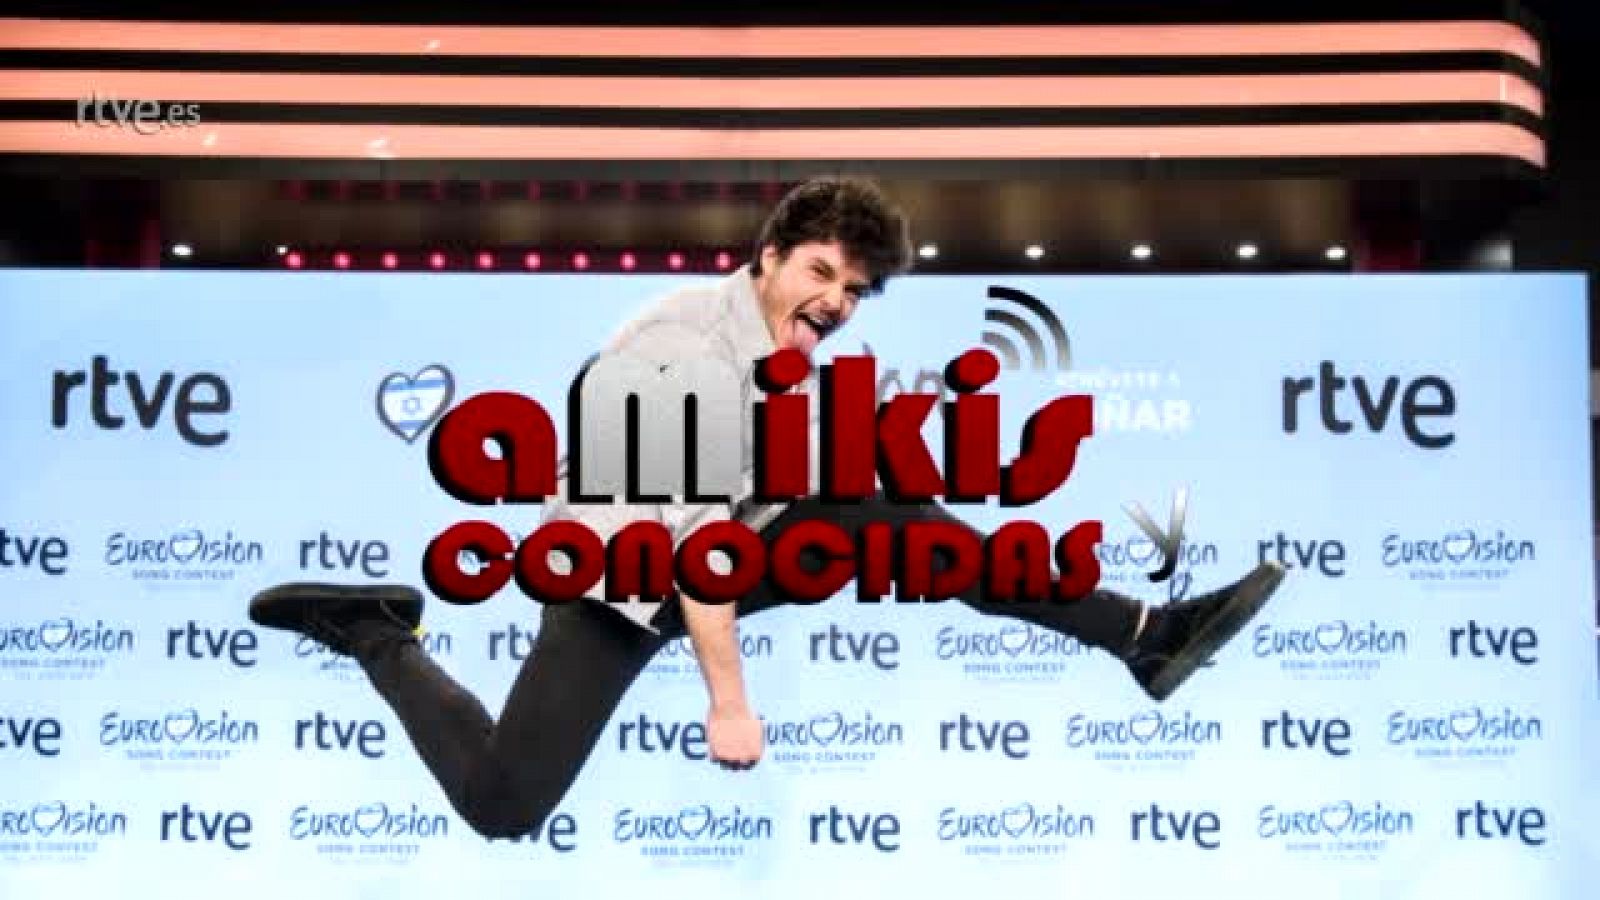 Eurovisión 2019 - Miki, en "aMikis y conocidas", la tertulia sobre Eurovisión en RTVE.es